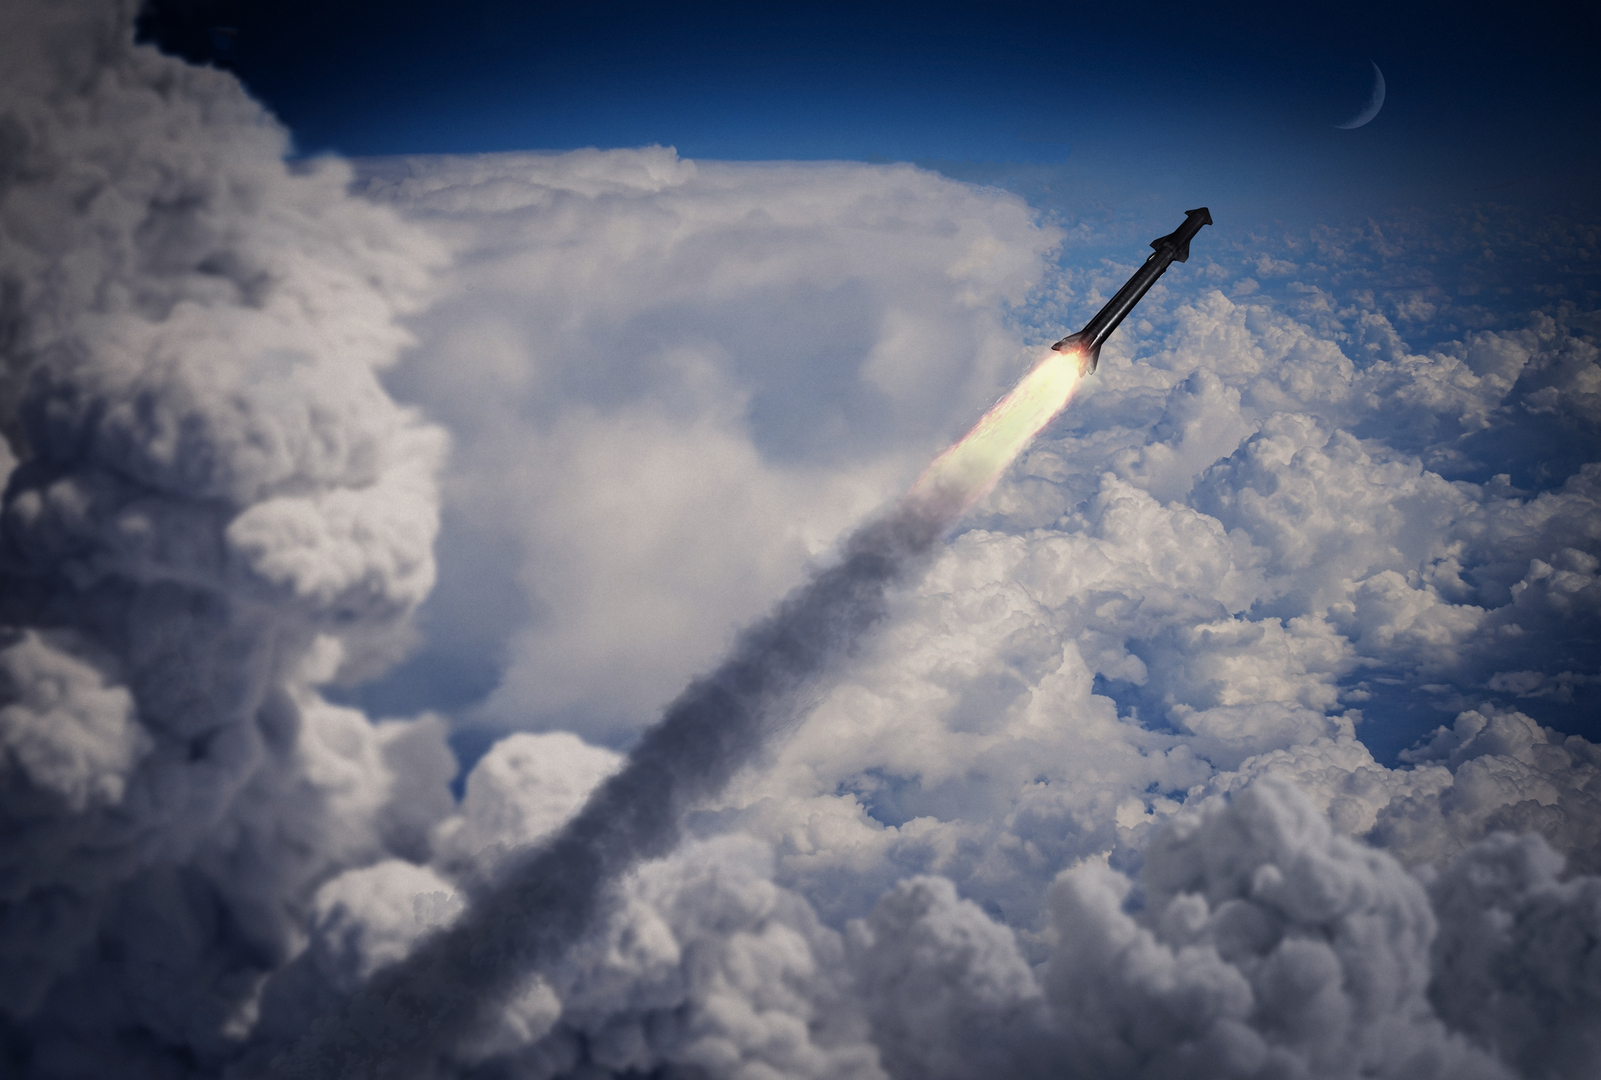 واشنطن وطوكيو تخصصان 3 مليارات دولار لتطوير صاروخ جديد يعترض الأسلحة الفرط صوتية